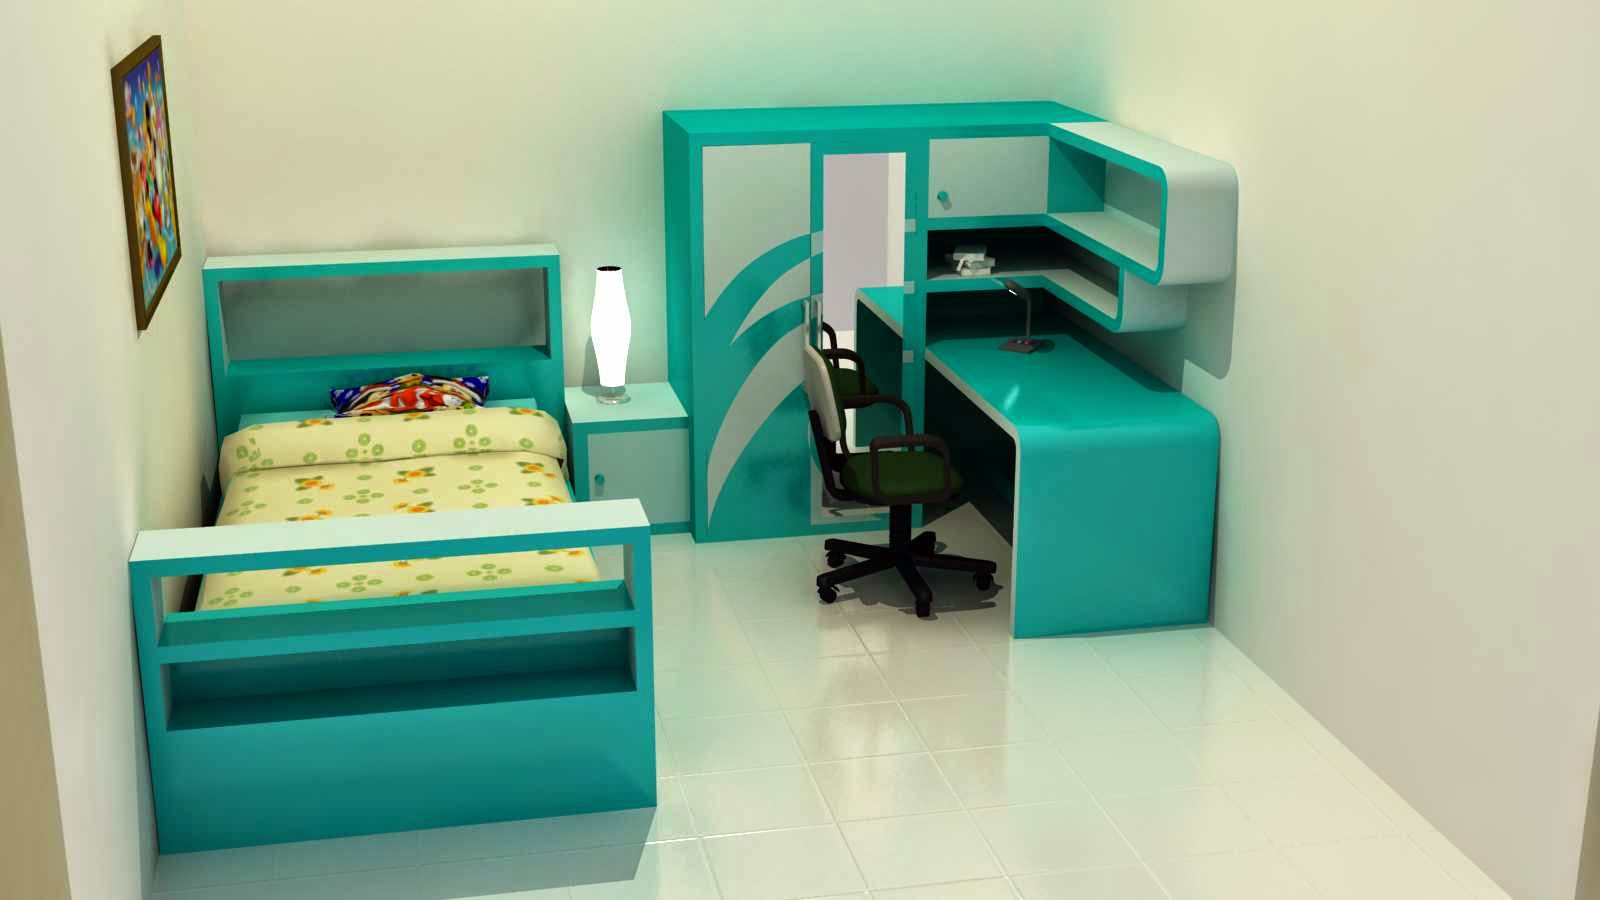 Desain Kamar Tidur Minimalis Untuk Anak Inspirasi Desain Rumah Dan